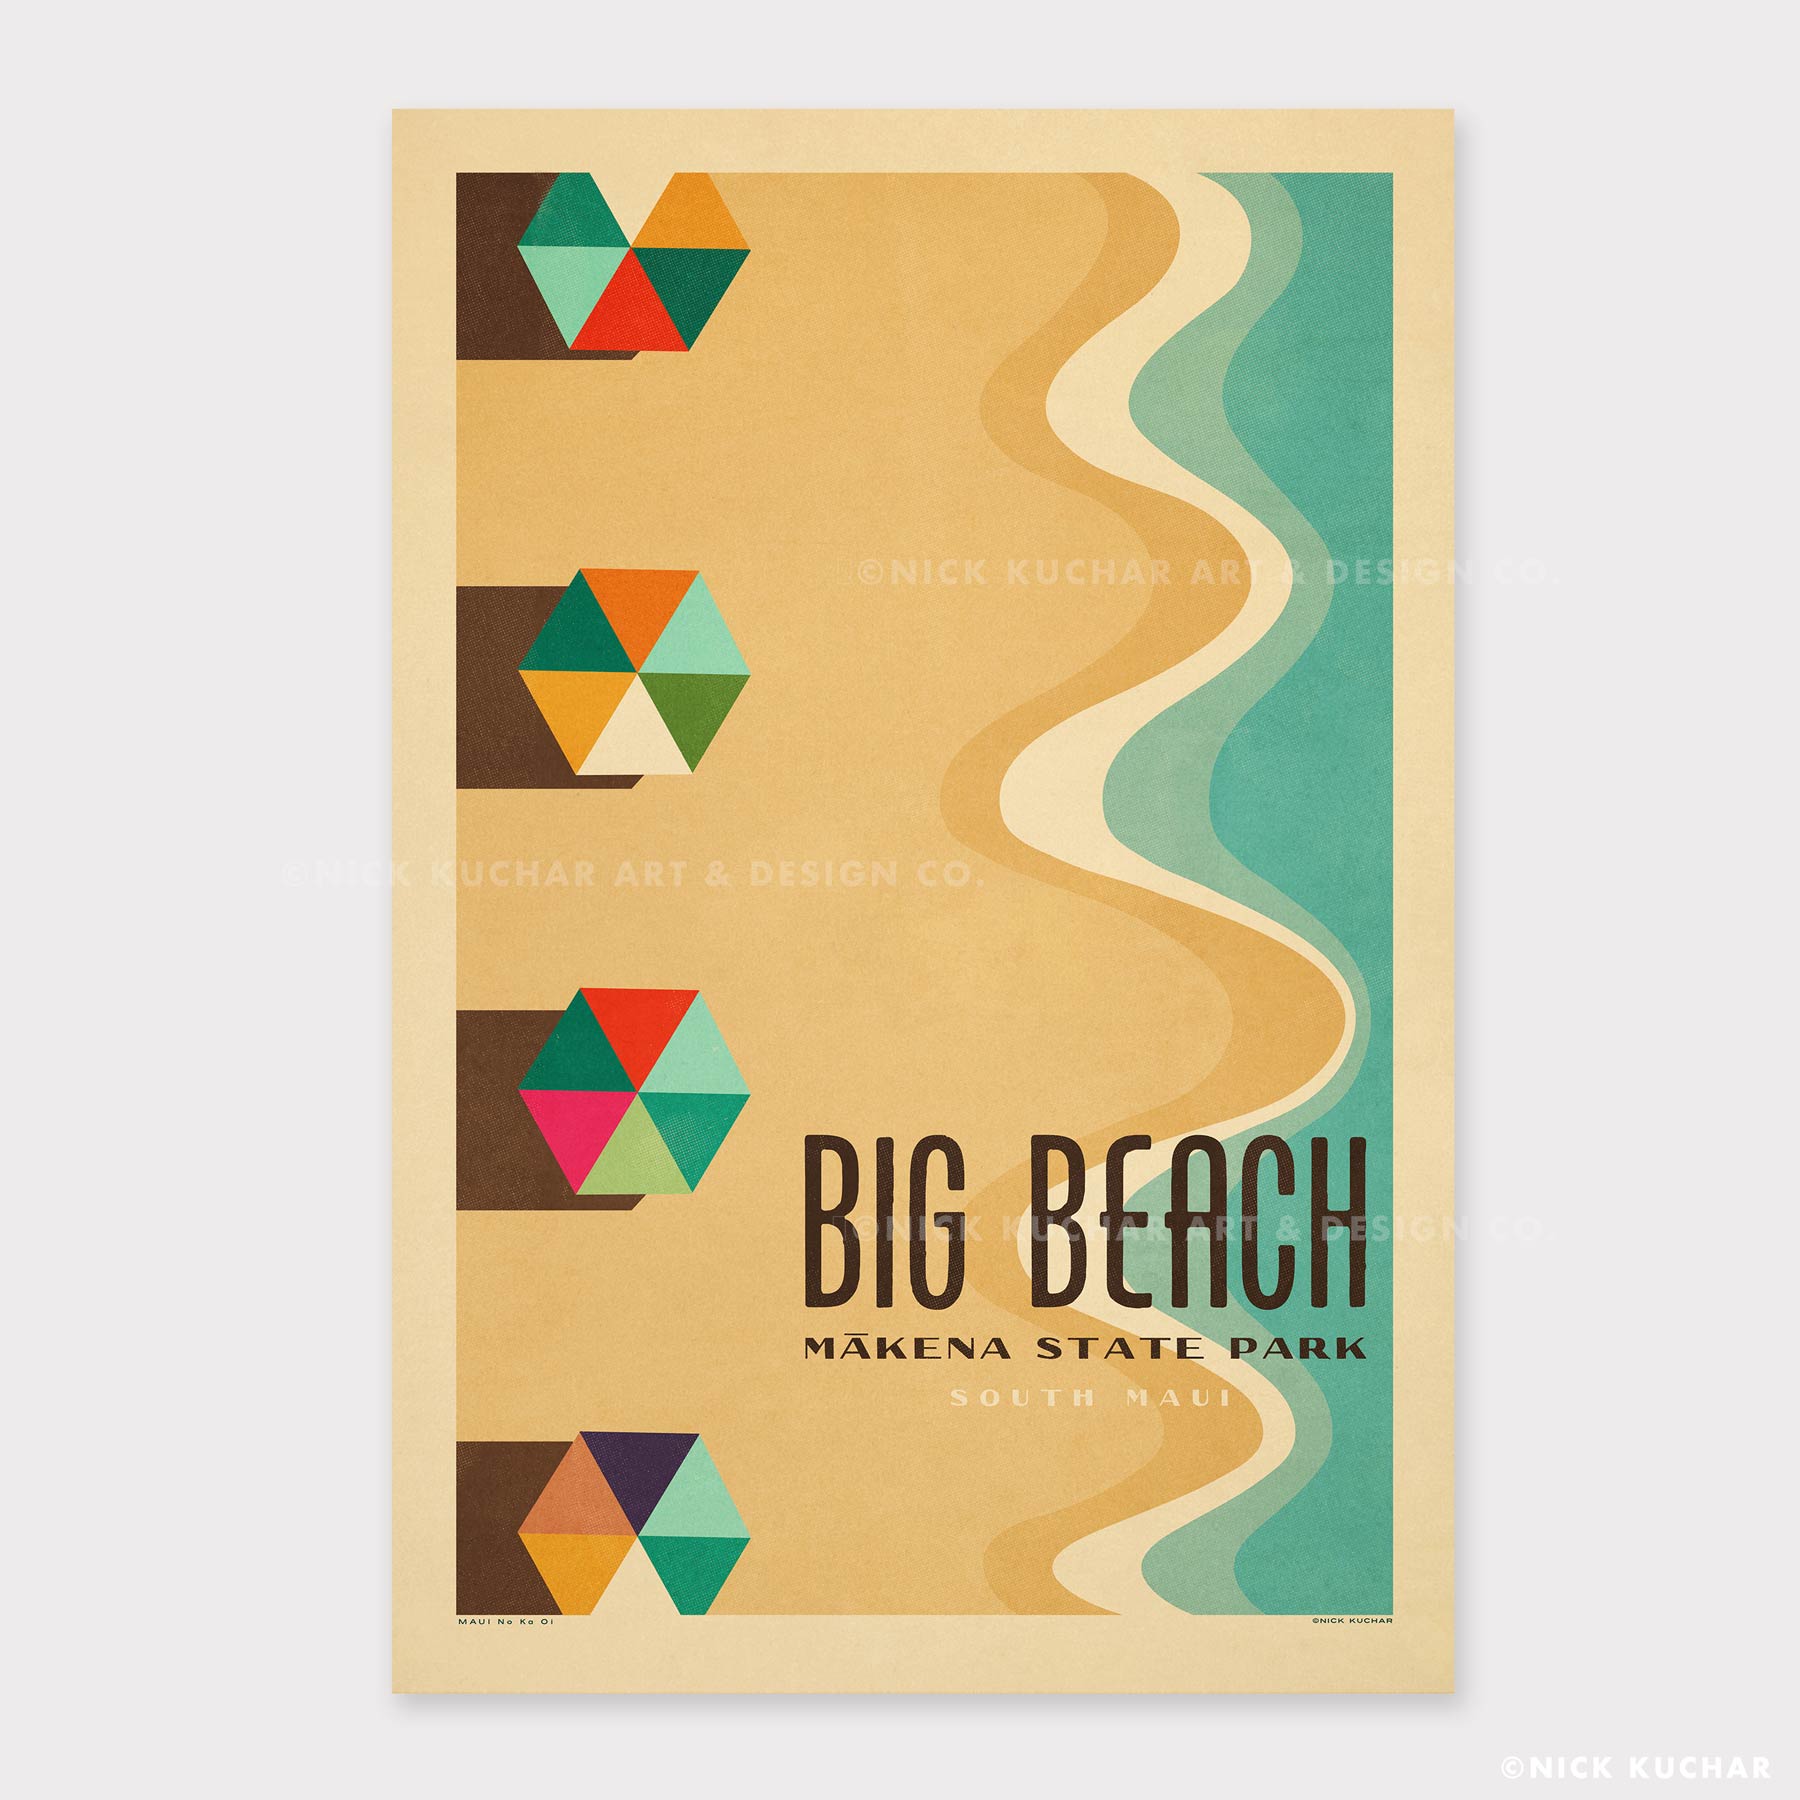 Gallery of Innovative Art Stampa artistica da parete Premium – Hawaii Beach  – 100 x 75 cm stampa